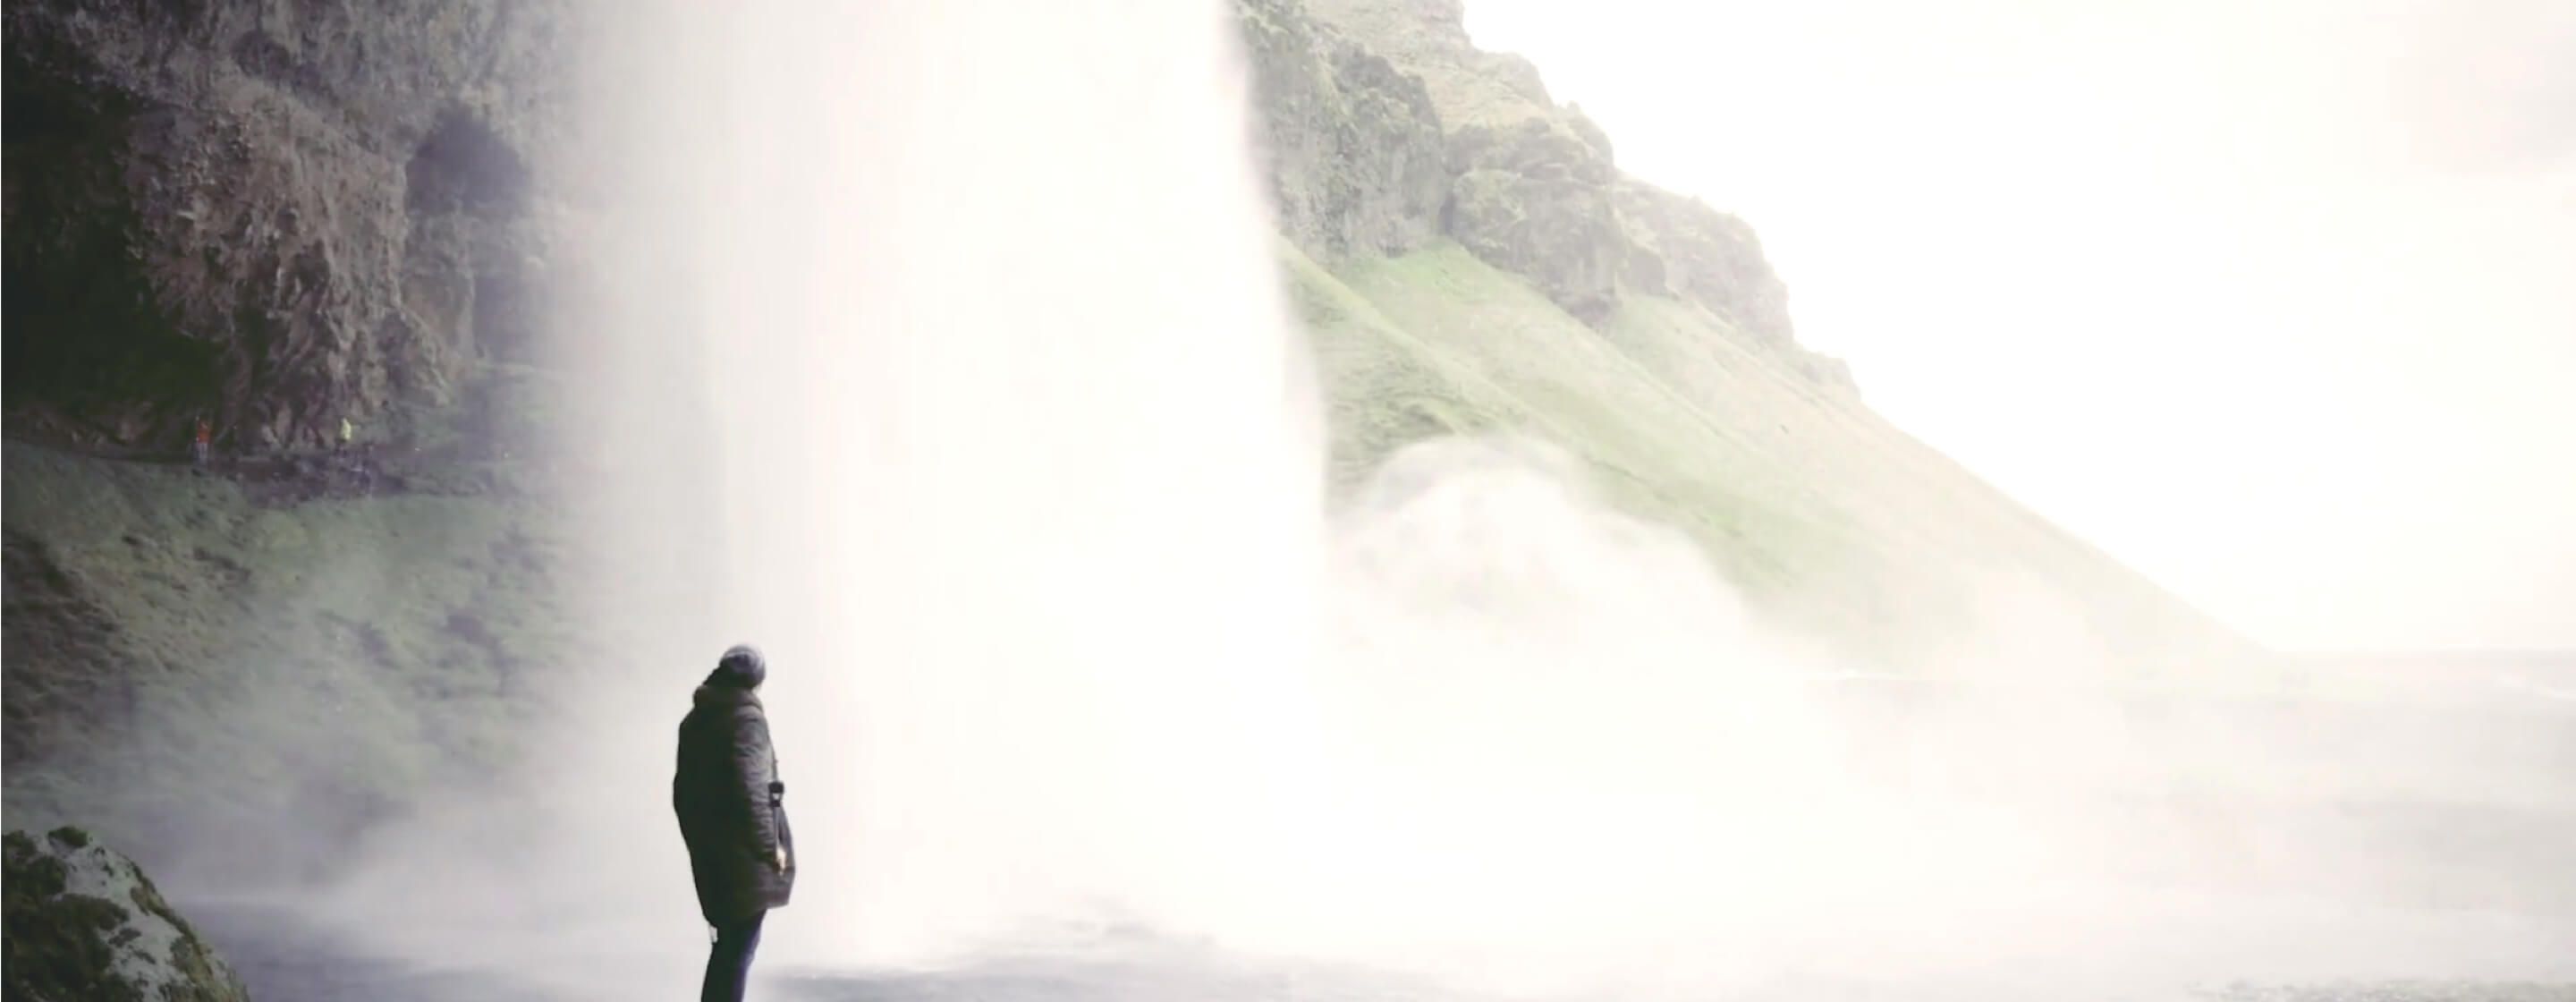 穿着外套的人站在巨大的瀑布旁边，后面是岩石和绿色的山丘